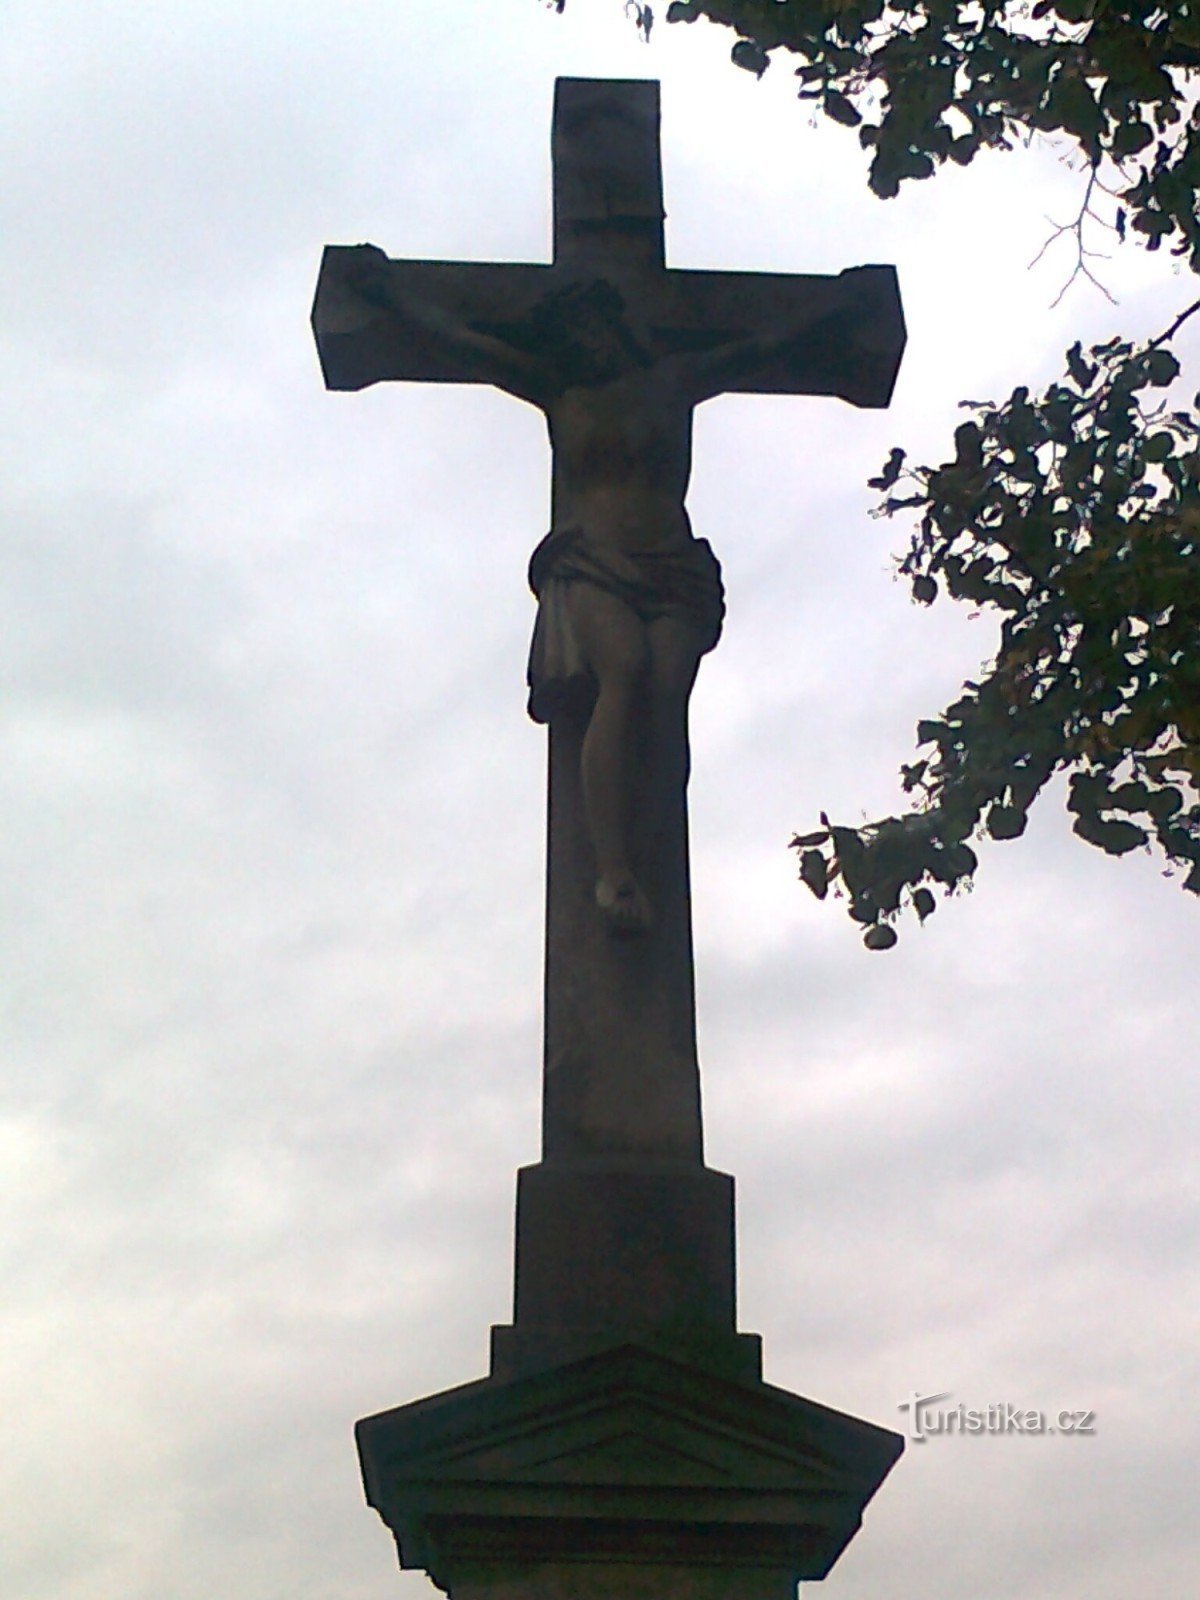 Úsov - stenen kruis bij de weg Úsov - Stavenice